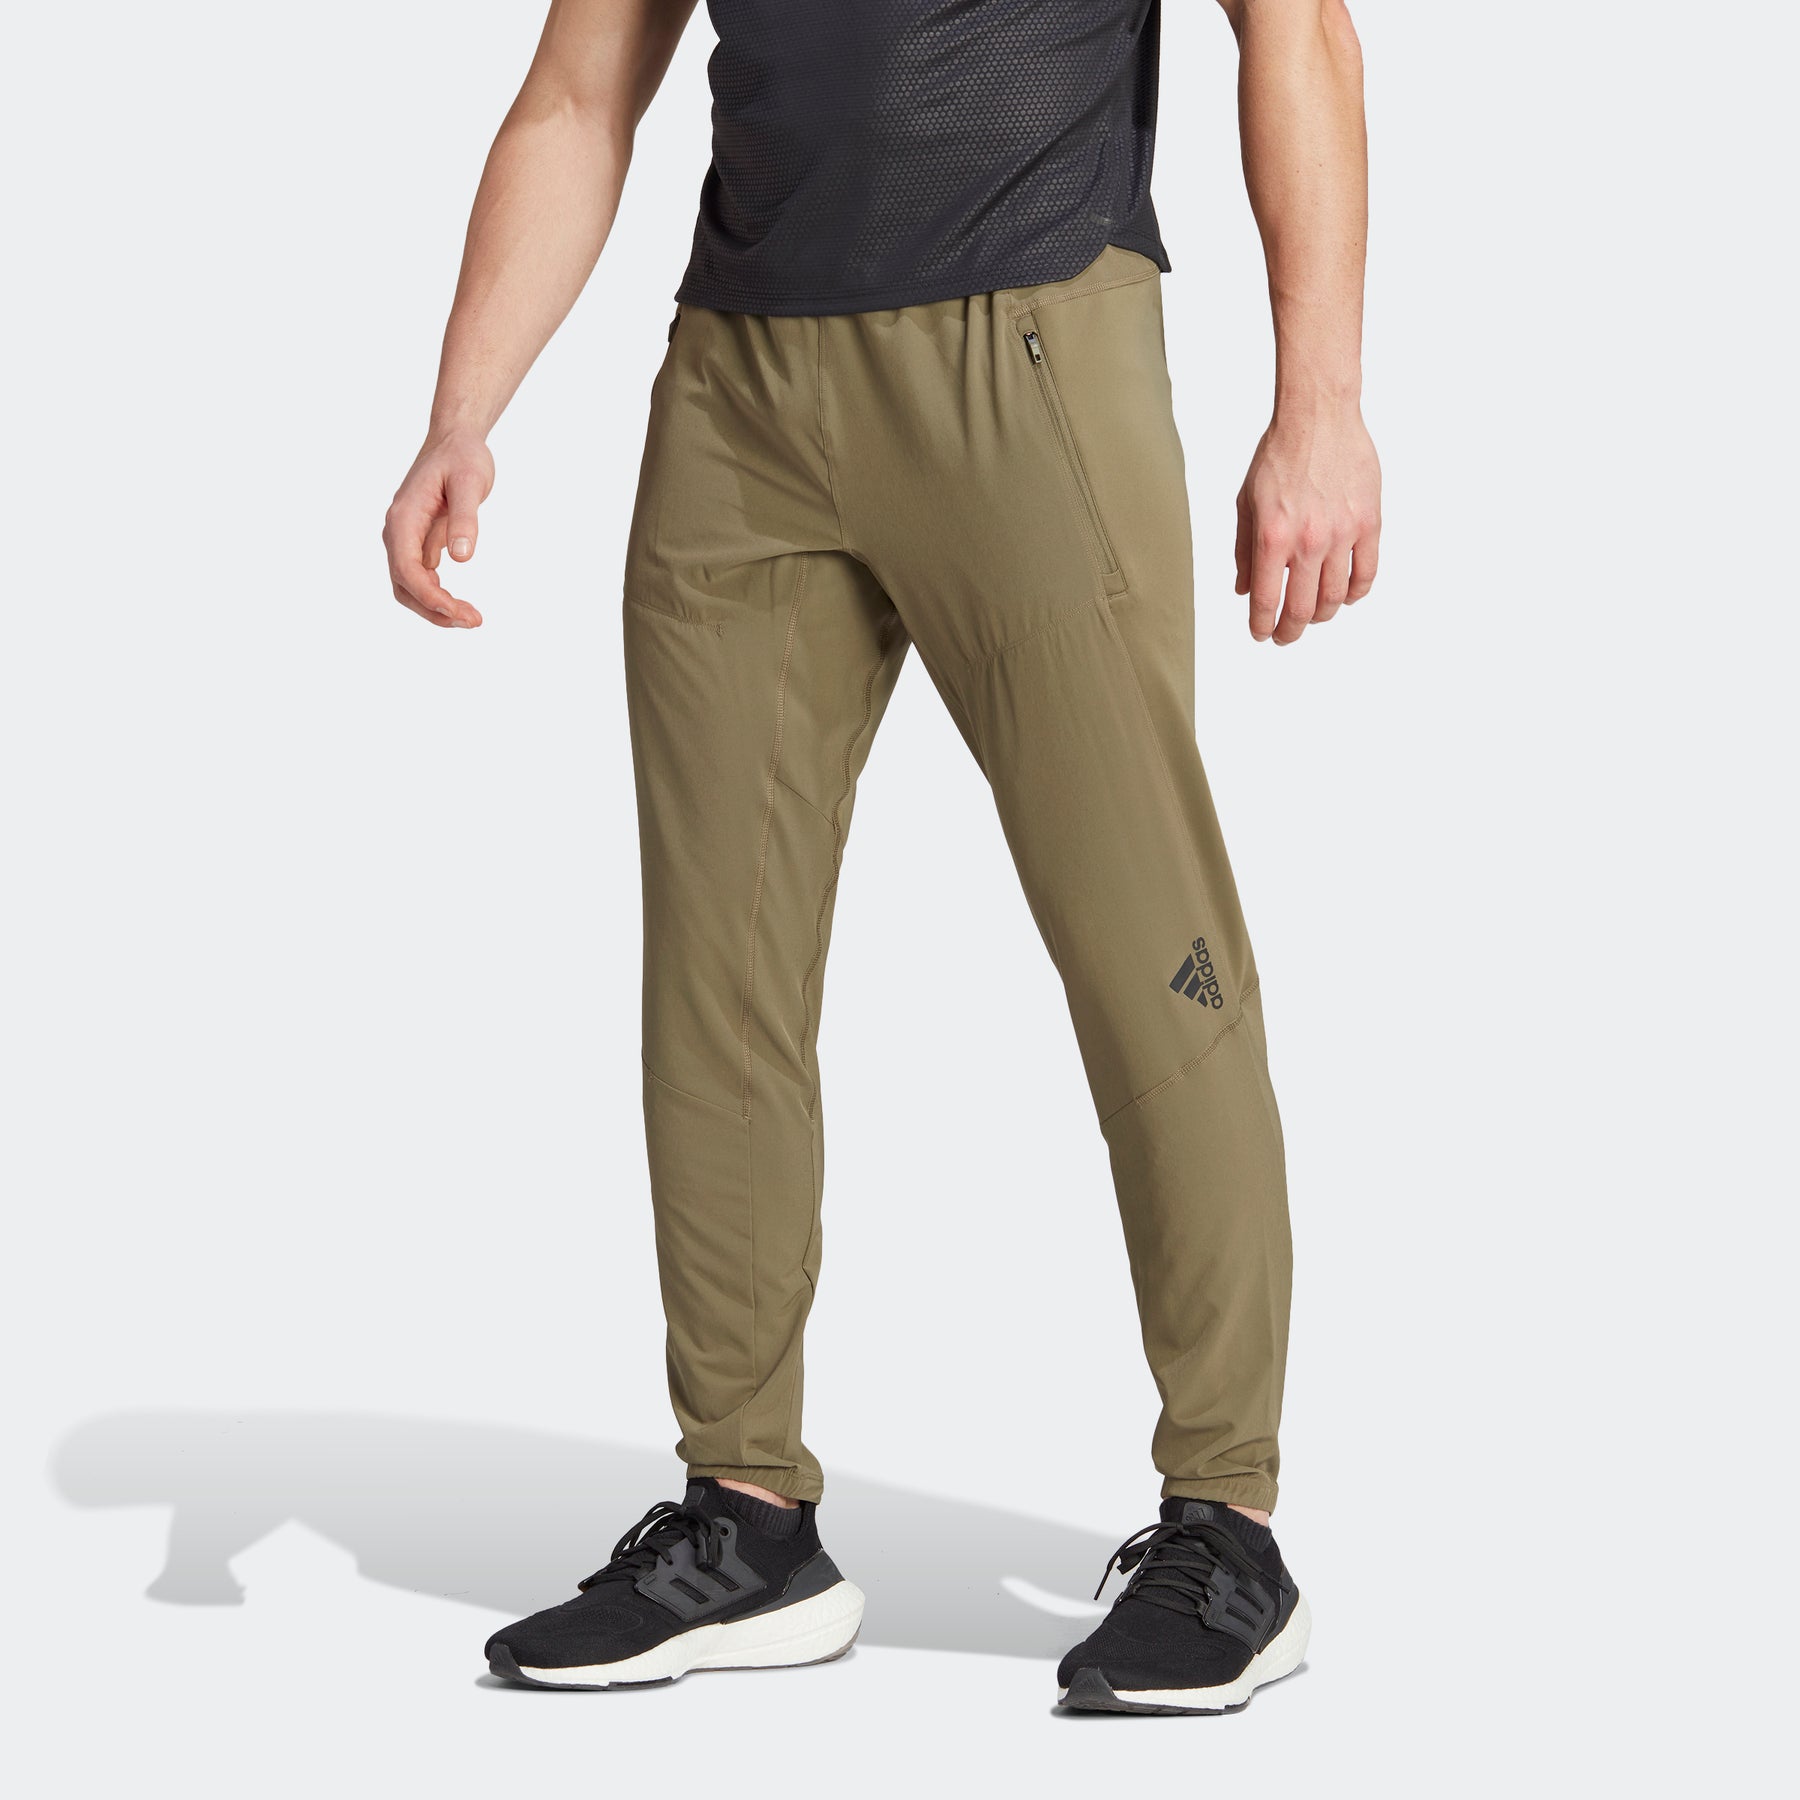 Peloton Black Active Pants Size S - 54% off